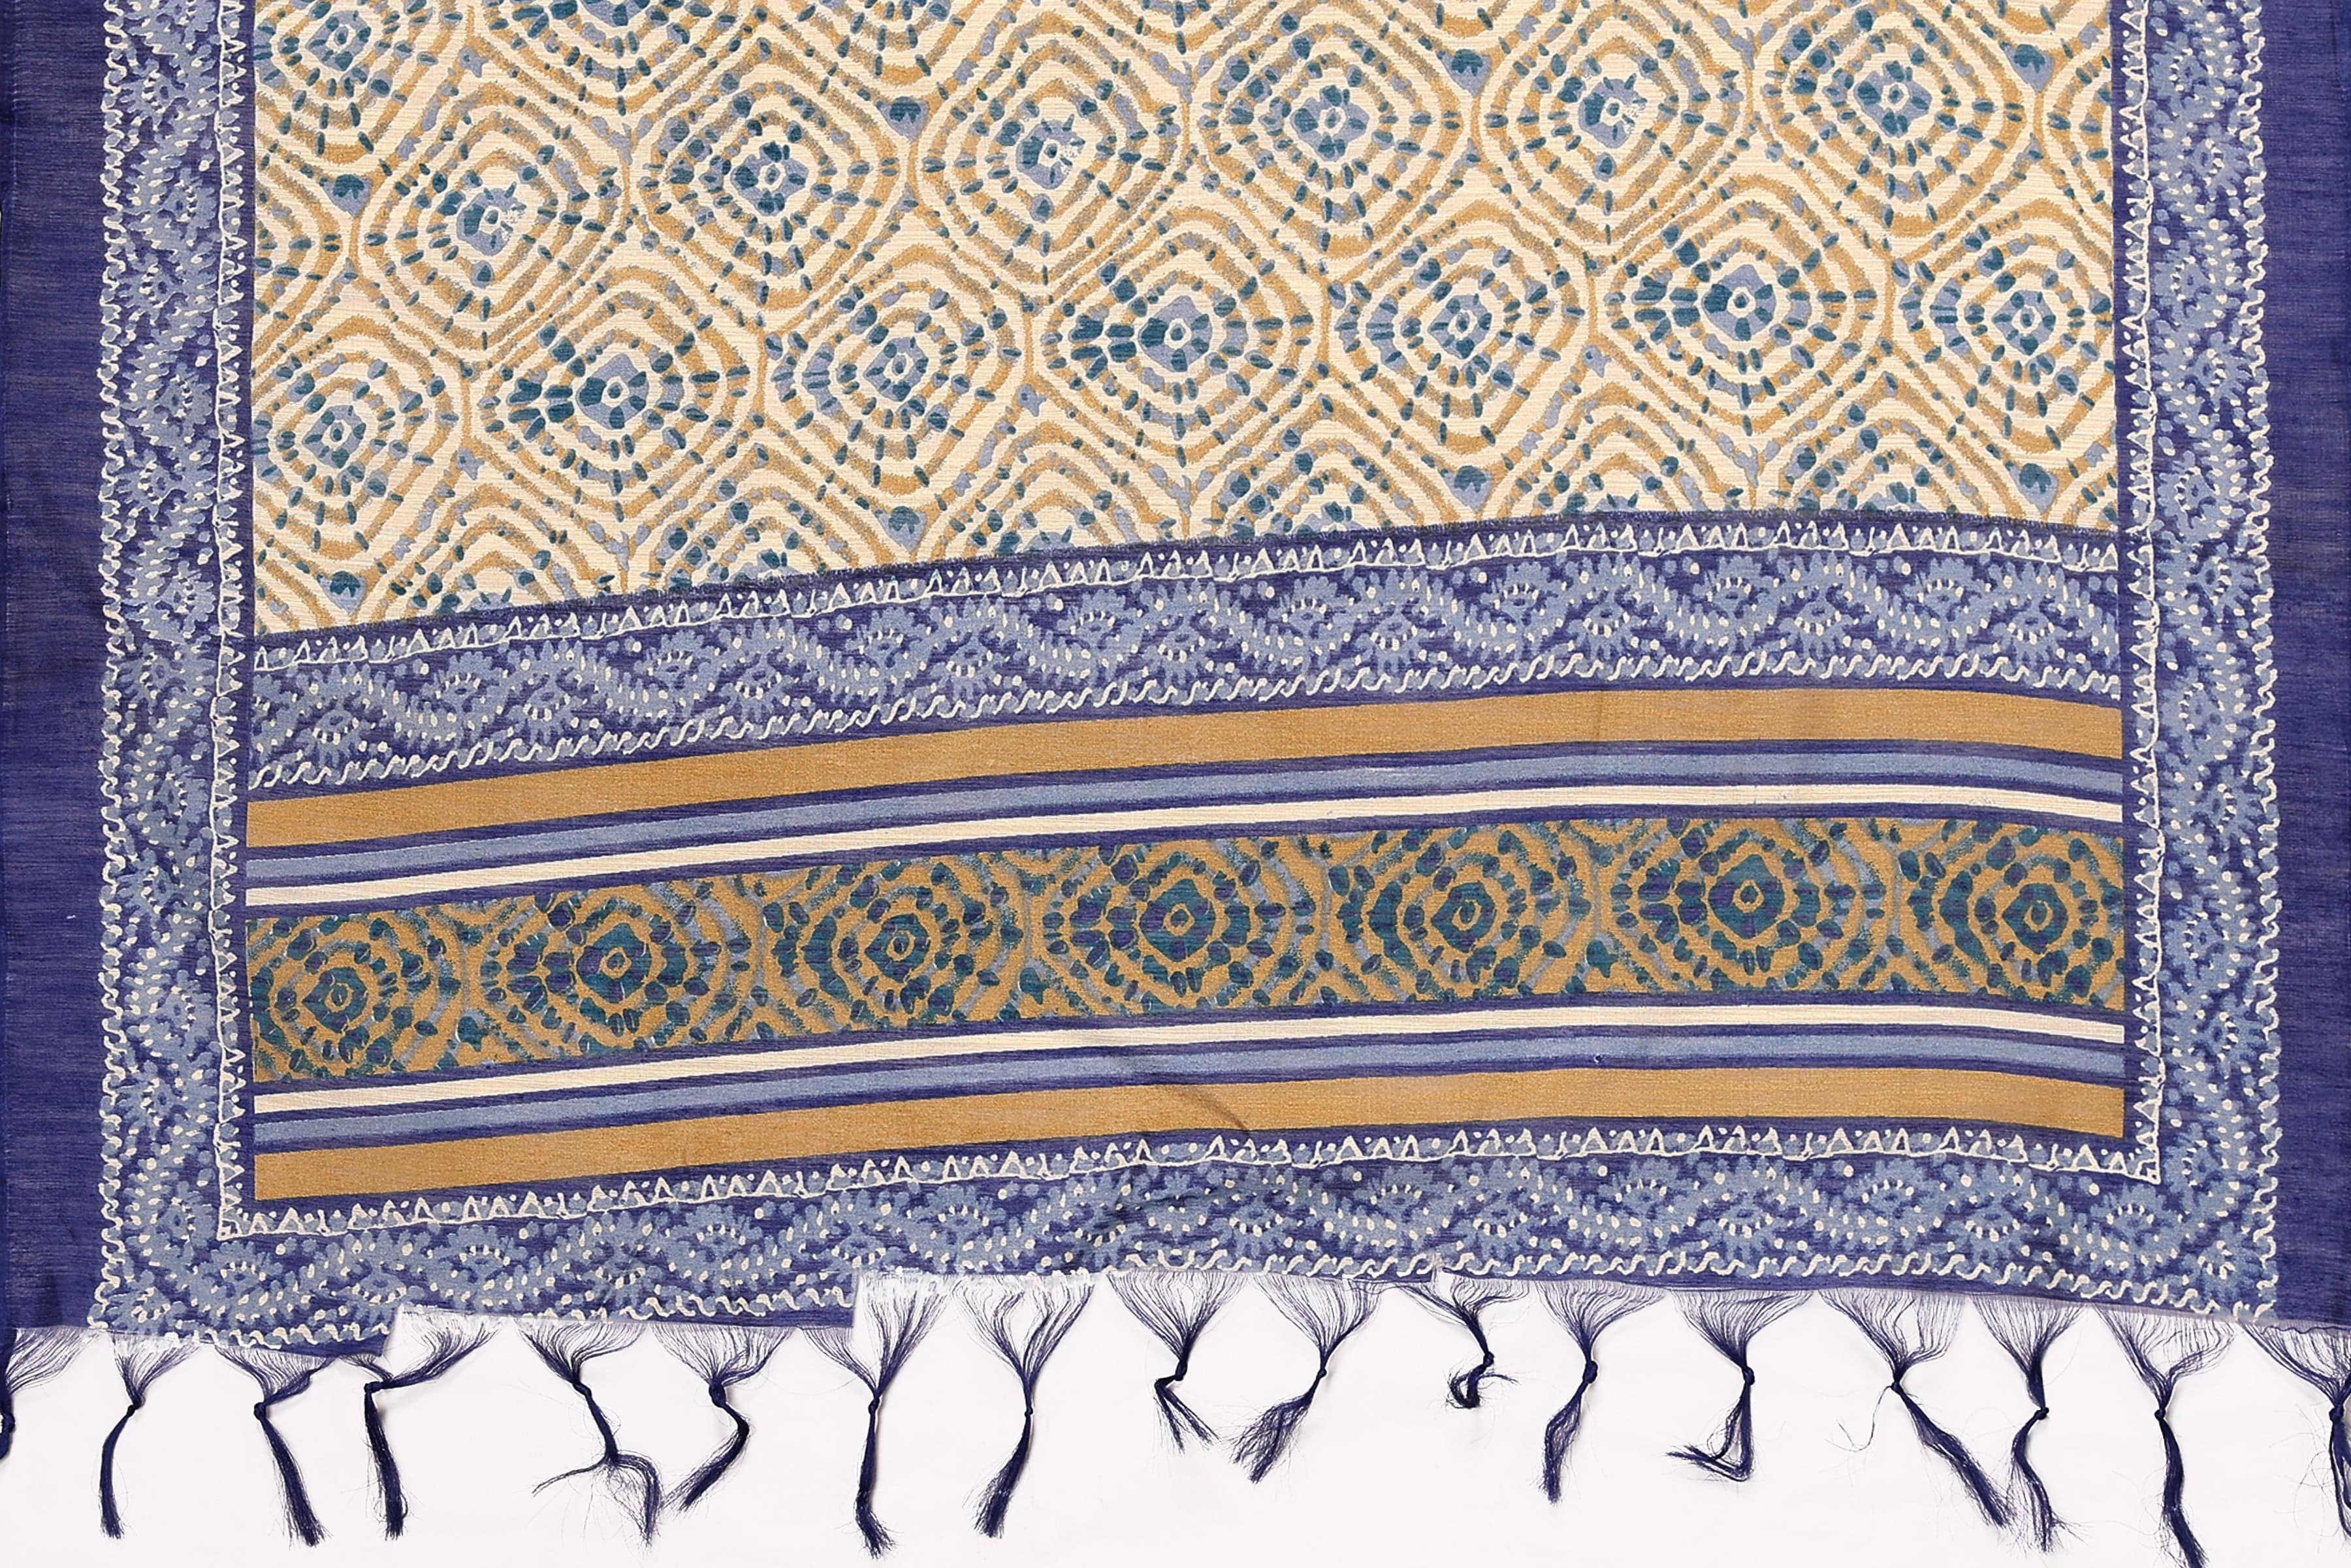 Varanga Blue And Beige Printed Khadi Cotton Dupatta With Tasselled Border